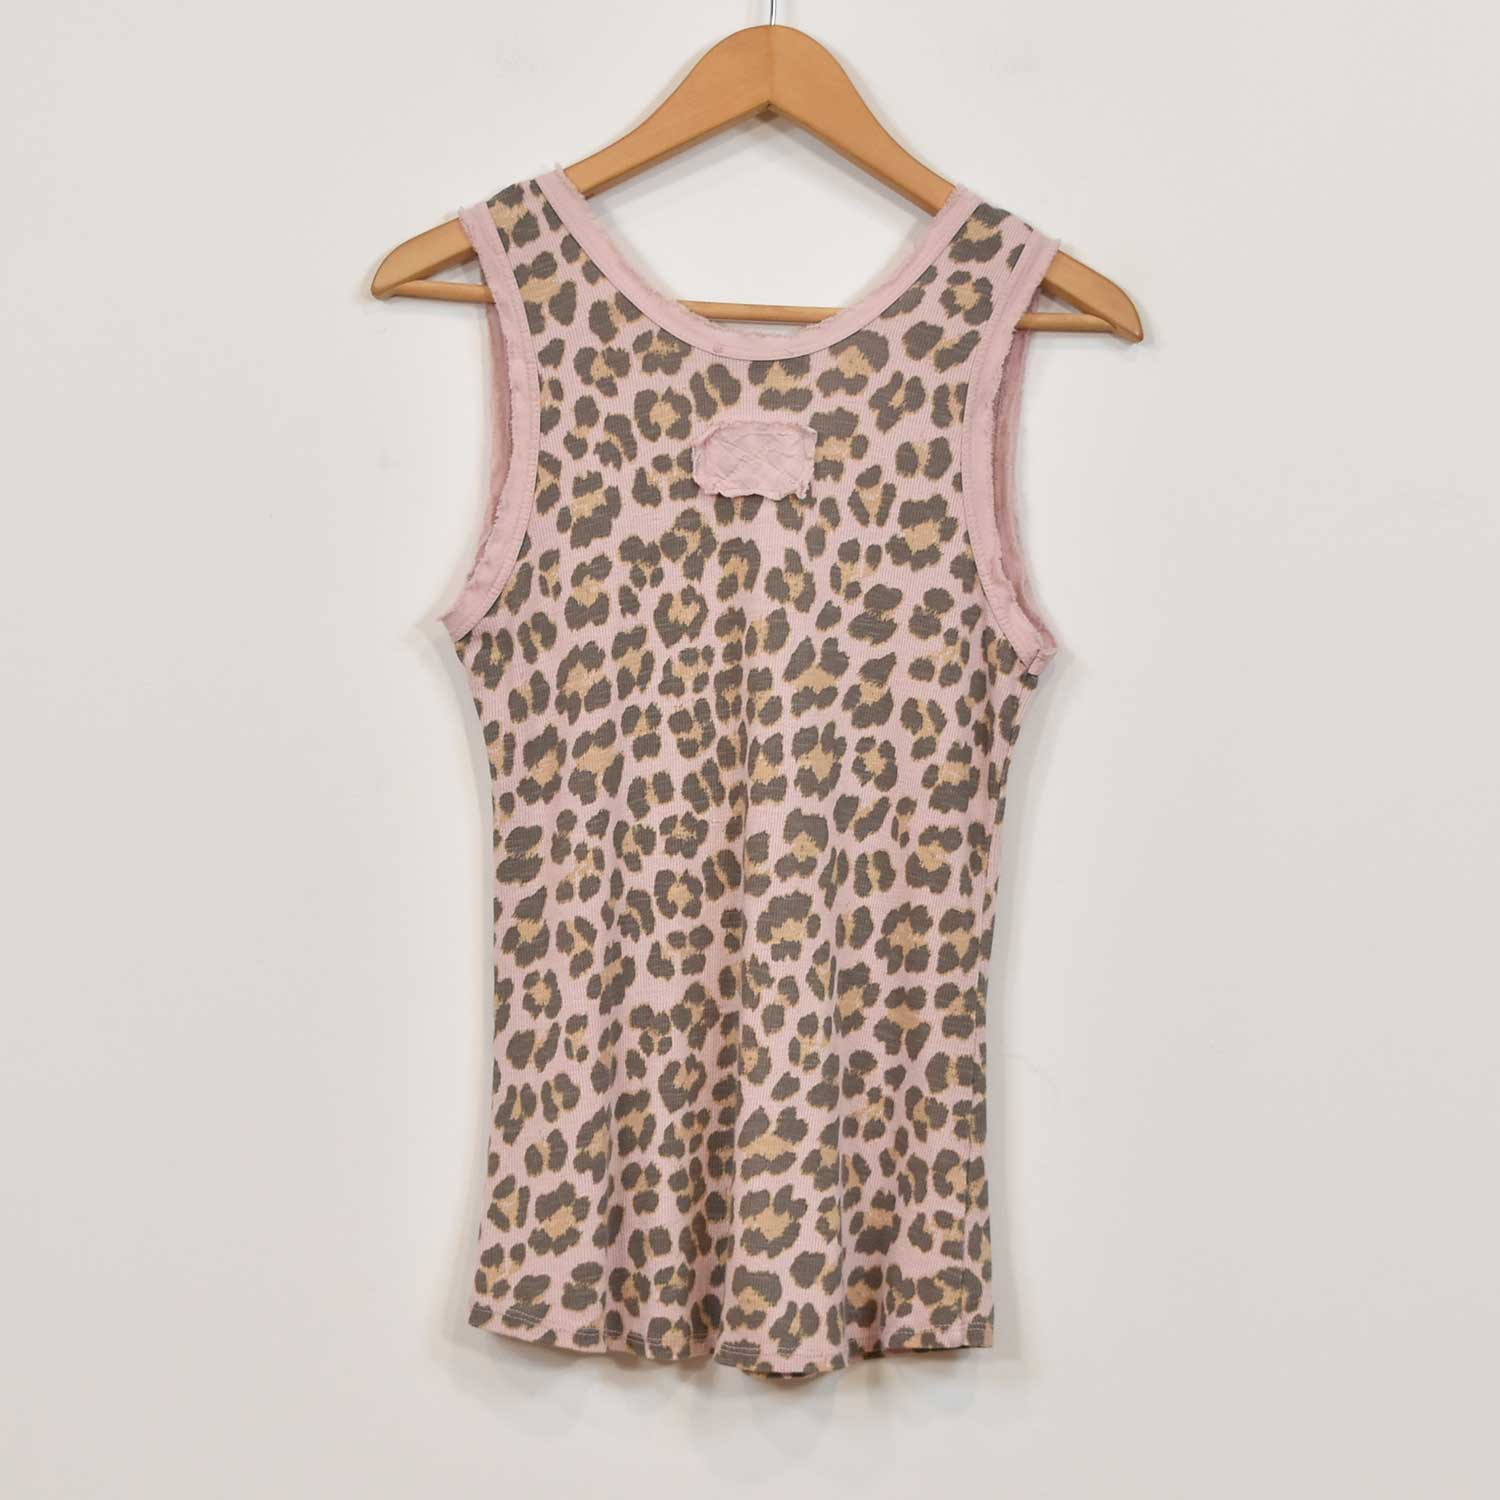 Camiseta leopardo rosa